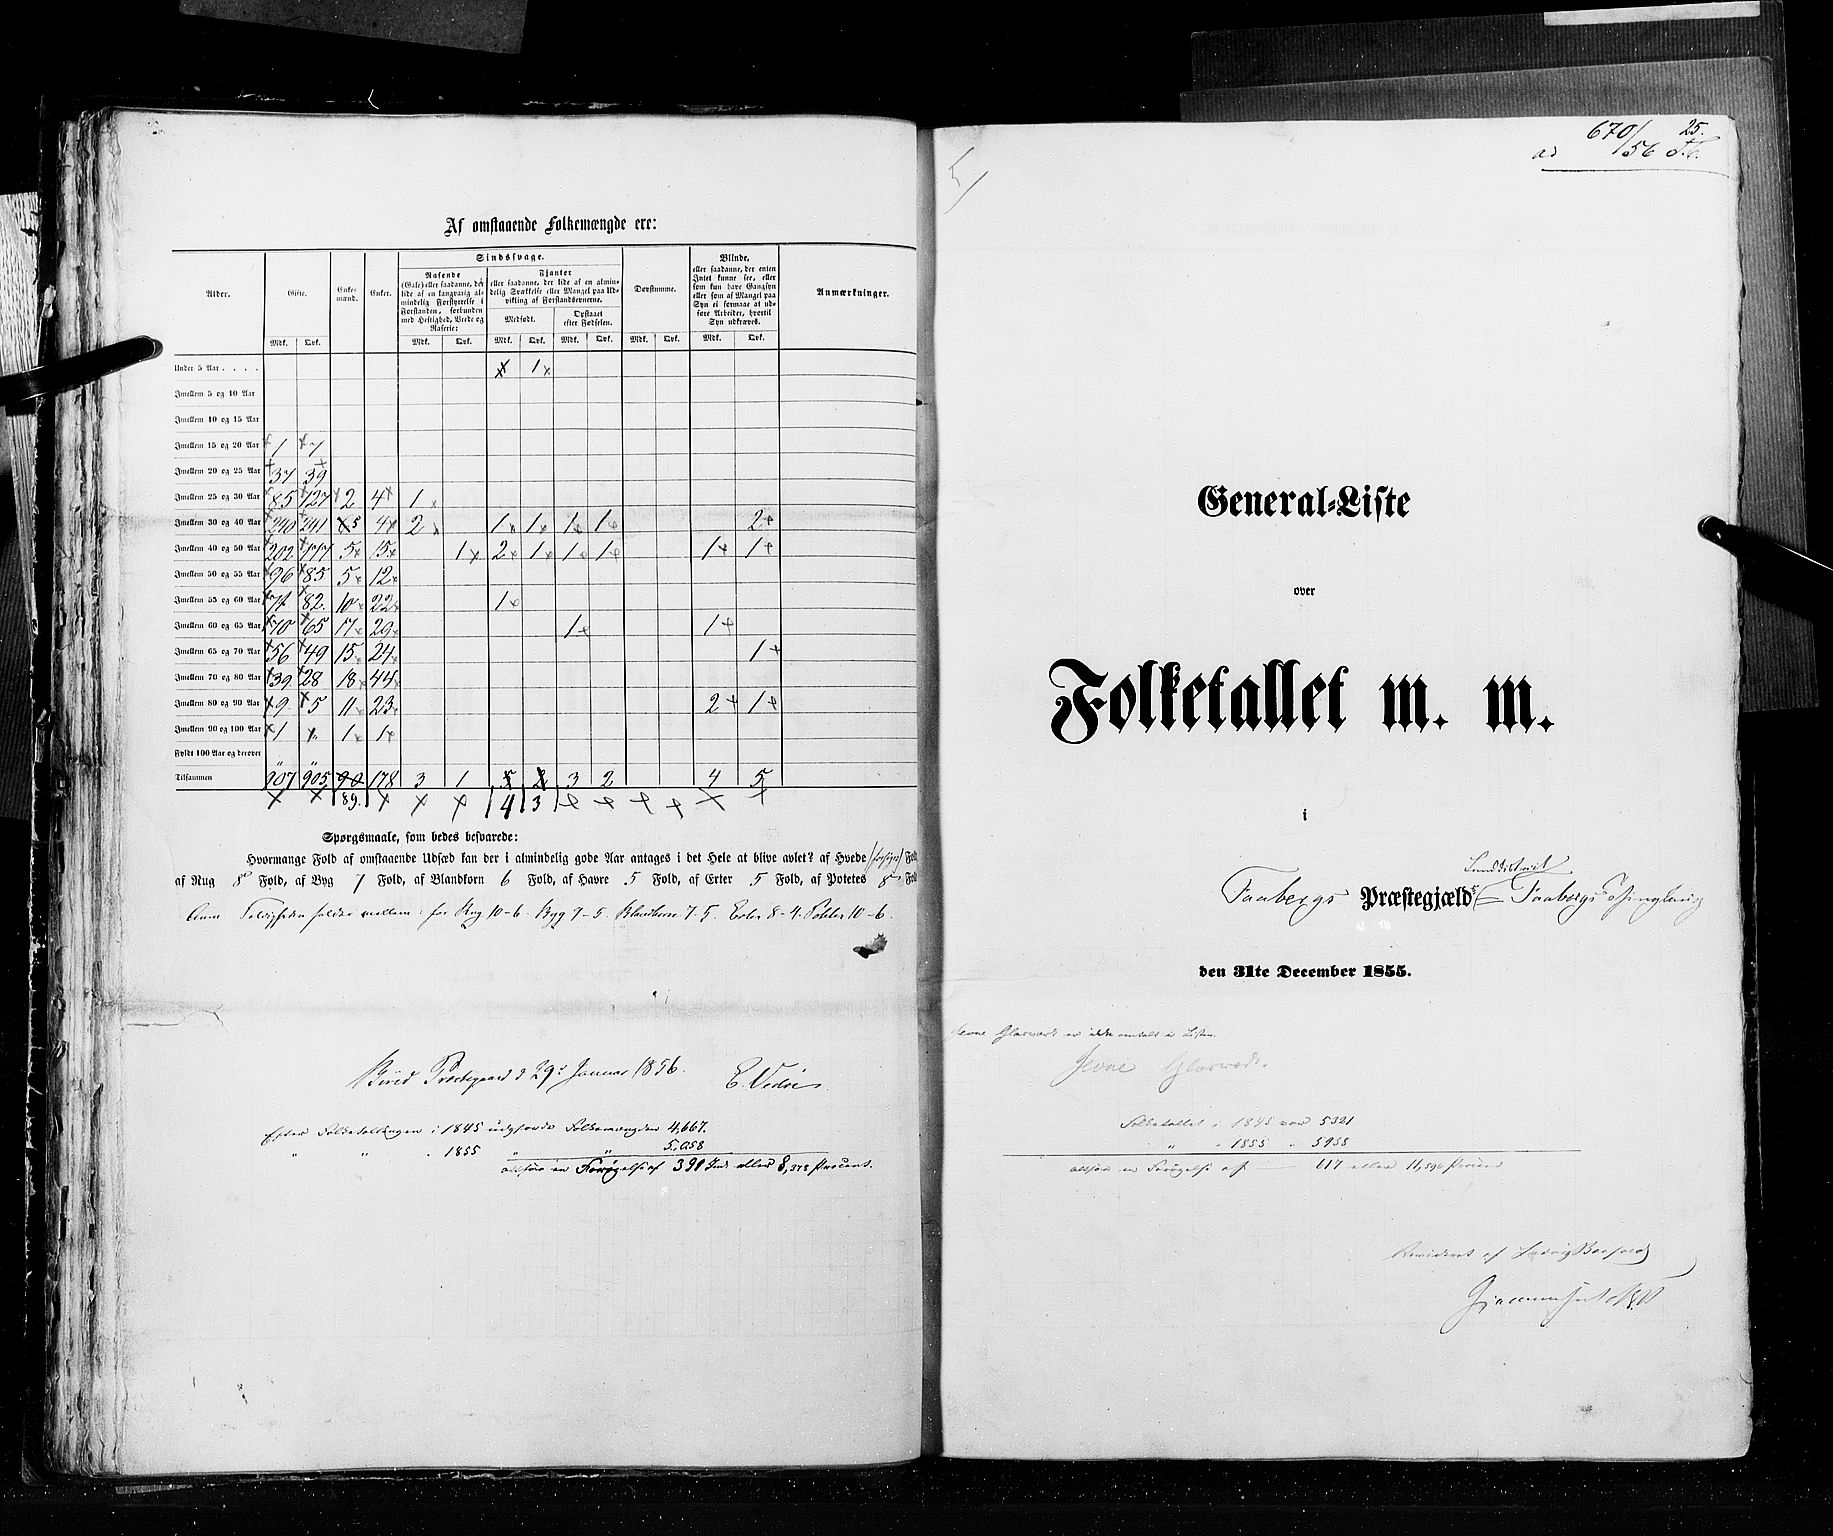 RA, Census 1855, vol. 2: Kristians amt, Buskerud amt og Jarlsberg og Larvik amt, 1855, p. 25